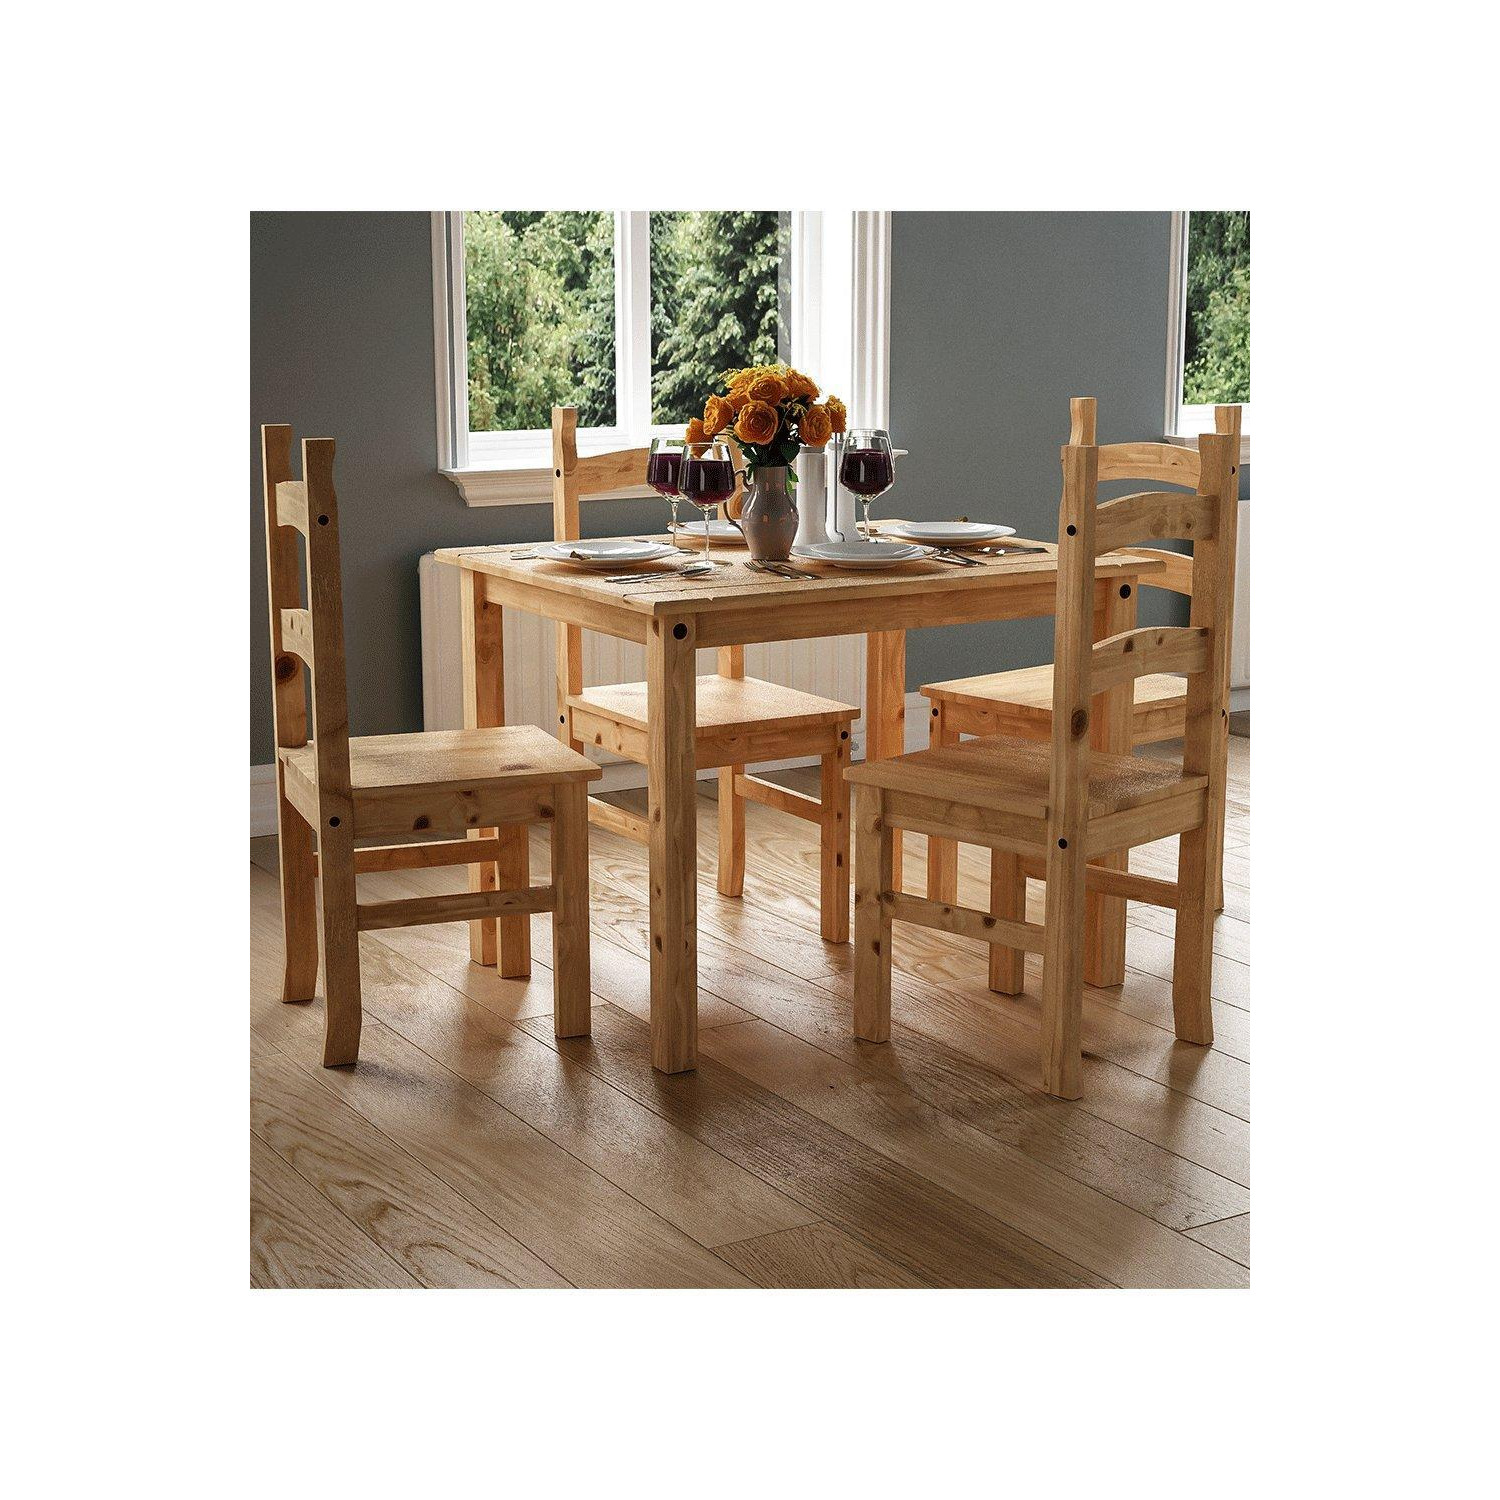 Vida Designs Corona 4 Seater Dining Set Solid Pine Kitchen Furniture - image 1